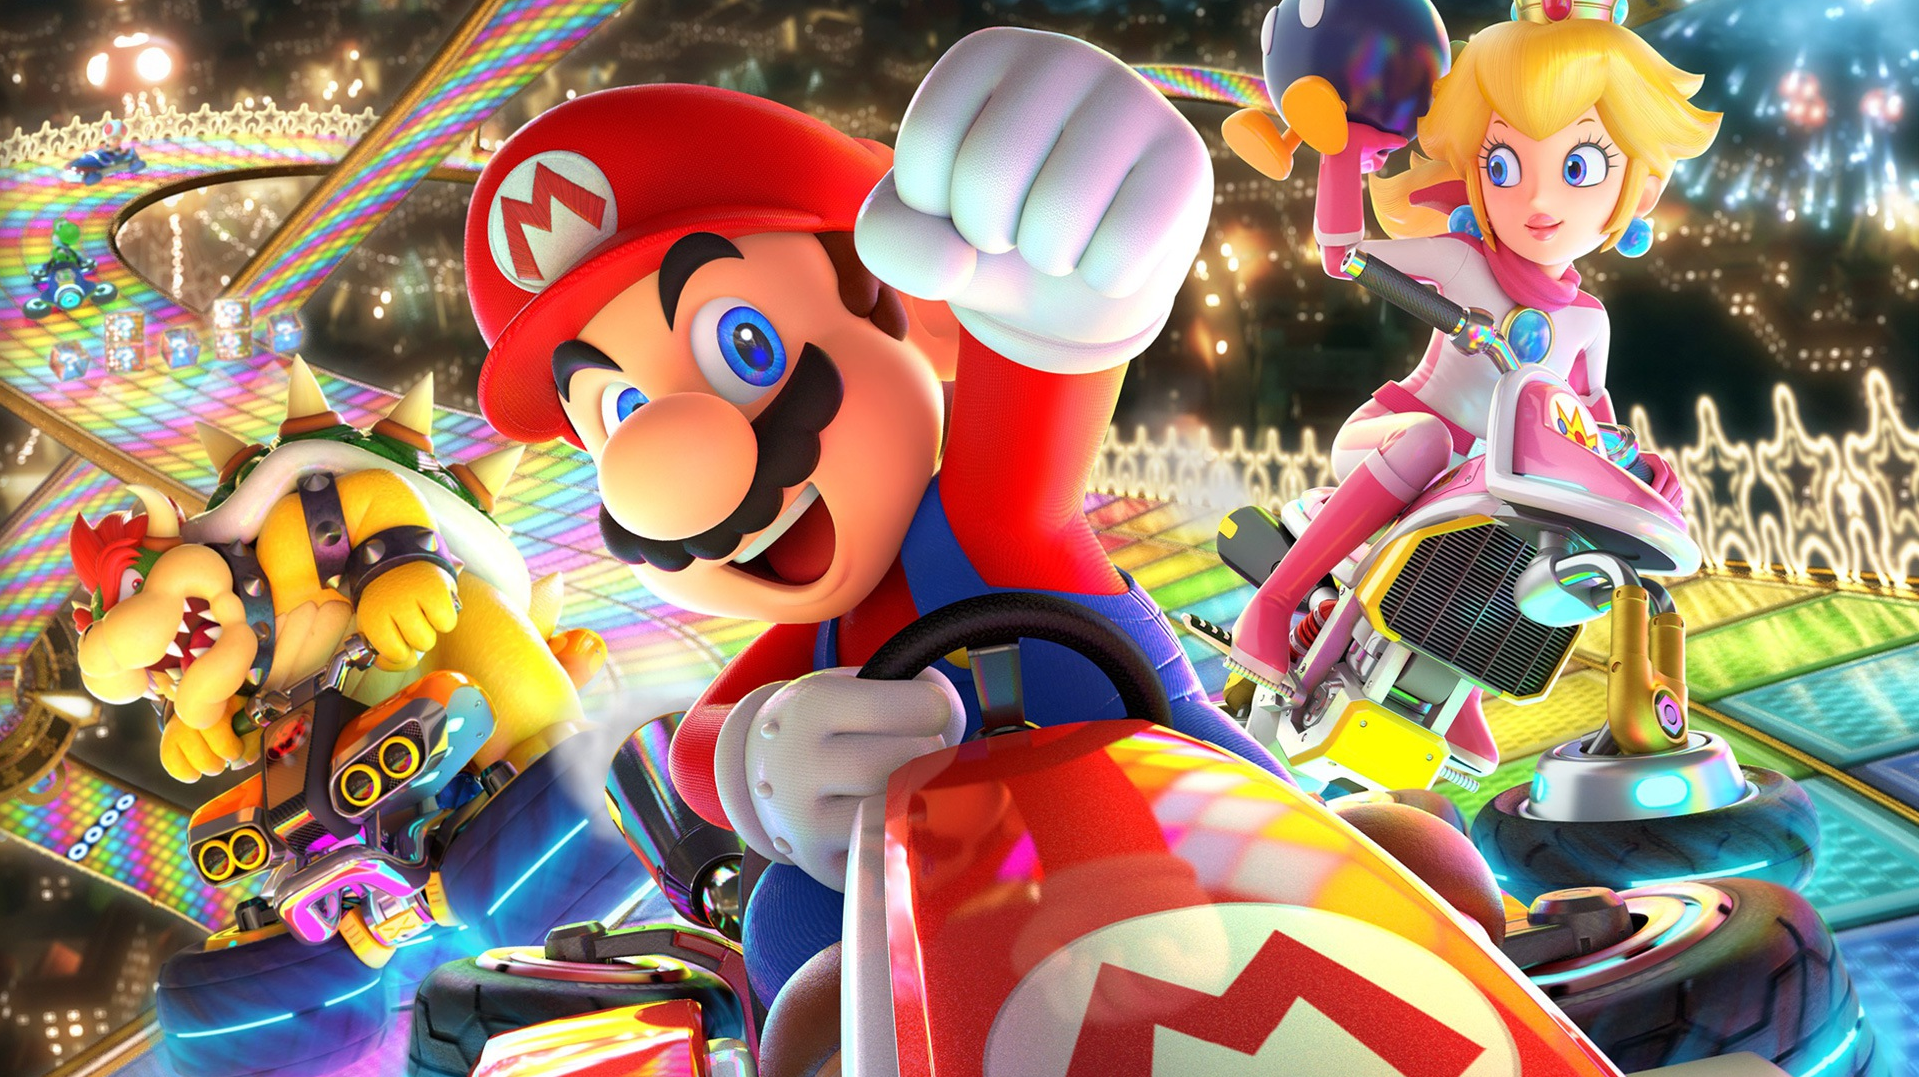 อัปเดตตัวเลขยอดขายประจำไตรมาสของเกม First Party จากเครื่อง Nintendo Switch และ Mario Kart 8 Deluxe ยังคงครองอันดับหนึ่งด้วยยอดขาย 38.74 ล้านชุด